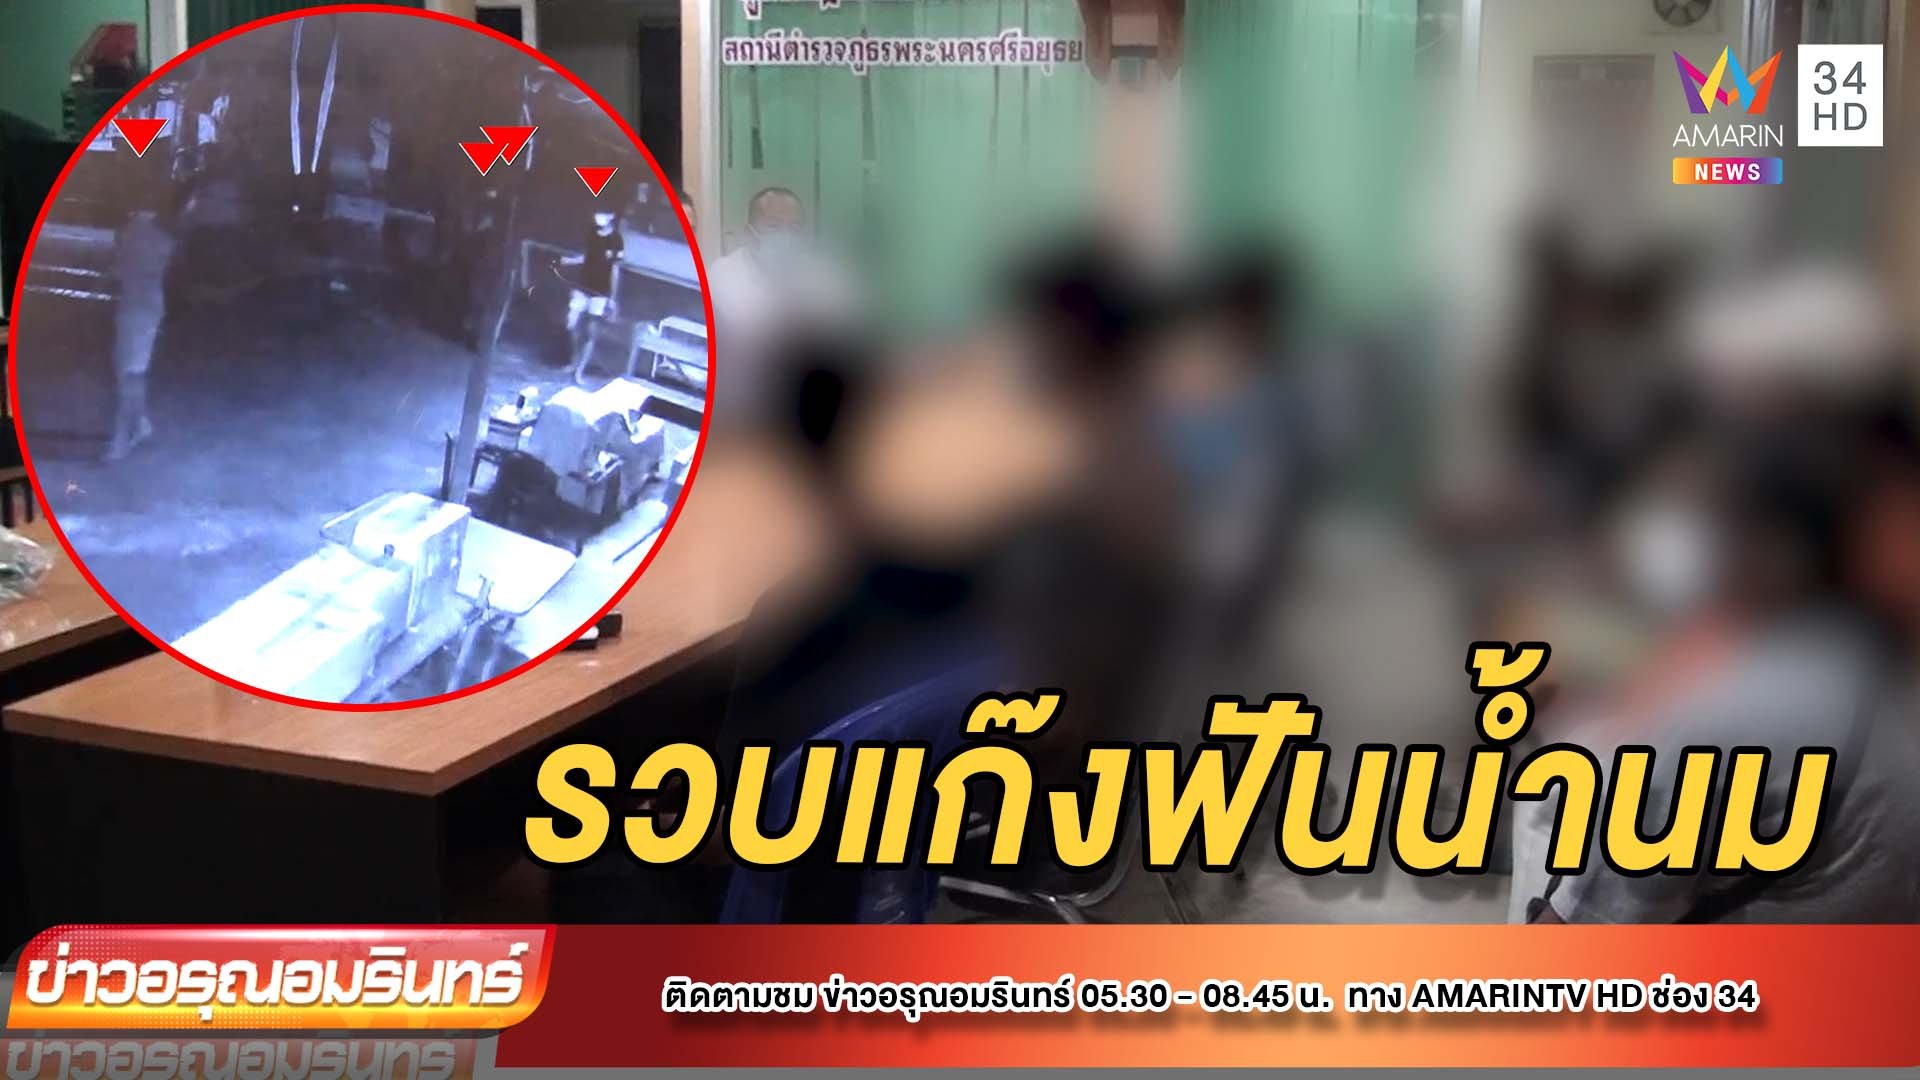 ตำรวจตามรวบแก๊งฟันน้ำนมตระเวนขโมยของร้านค้า | ข่าวอรุณอมรินทร์ | 12 ต.ค. 64 | AMARIN TVHD34